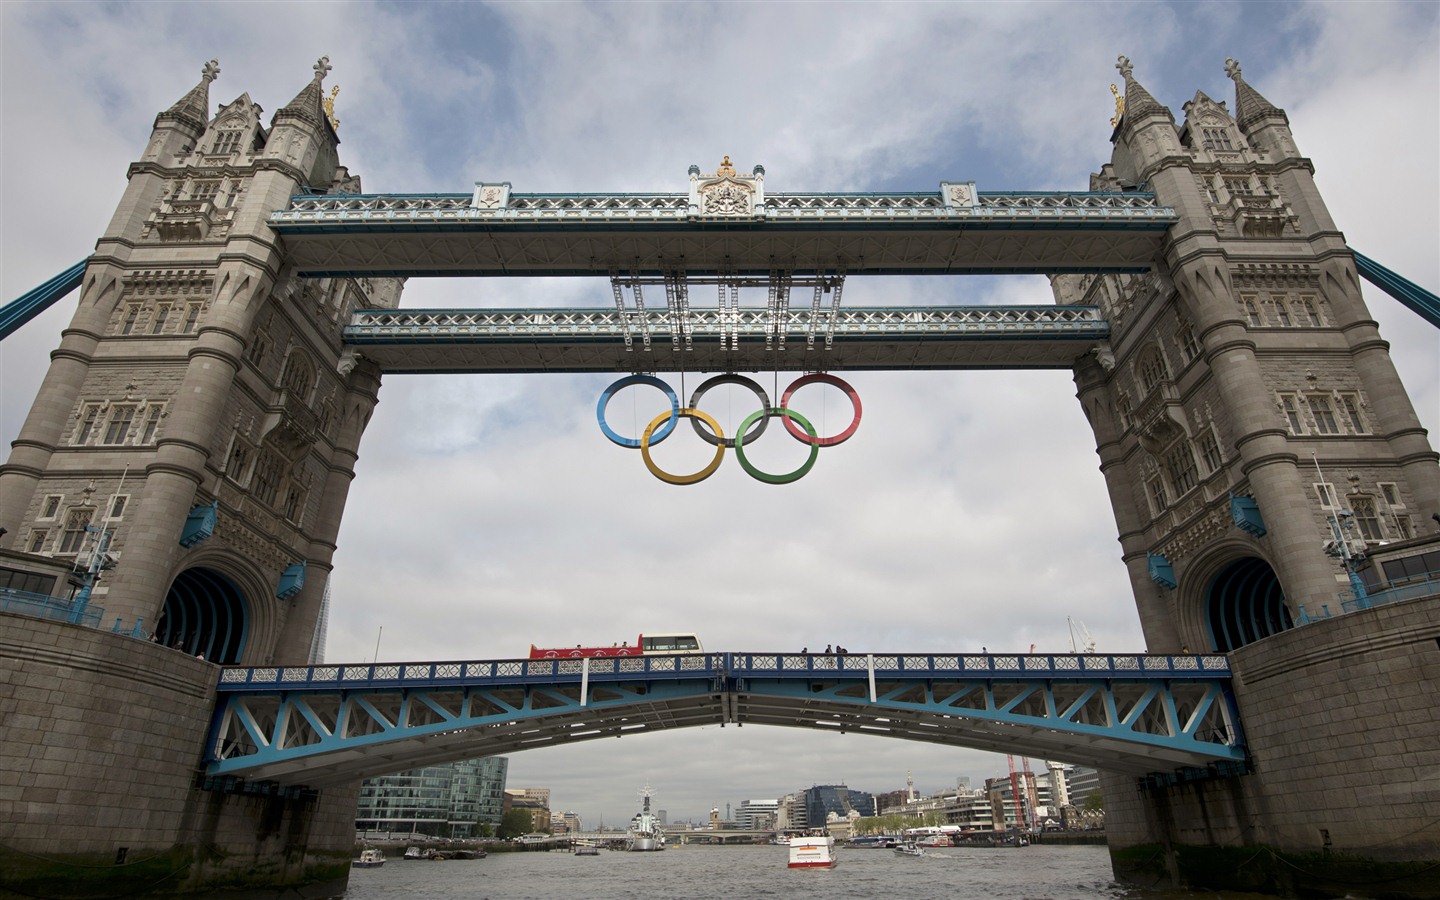 Londres 2012 Olimpiadas fondos temáticos (1) #27 - 1440x900